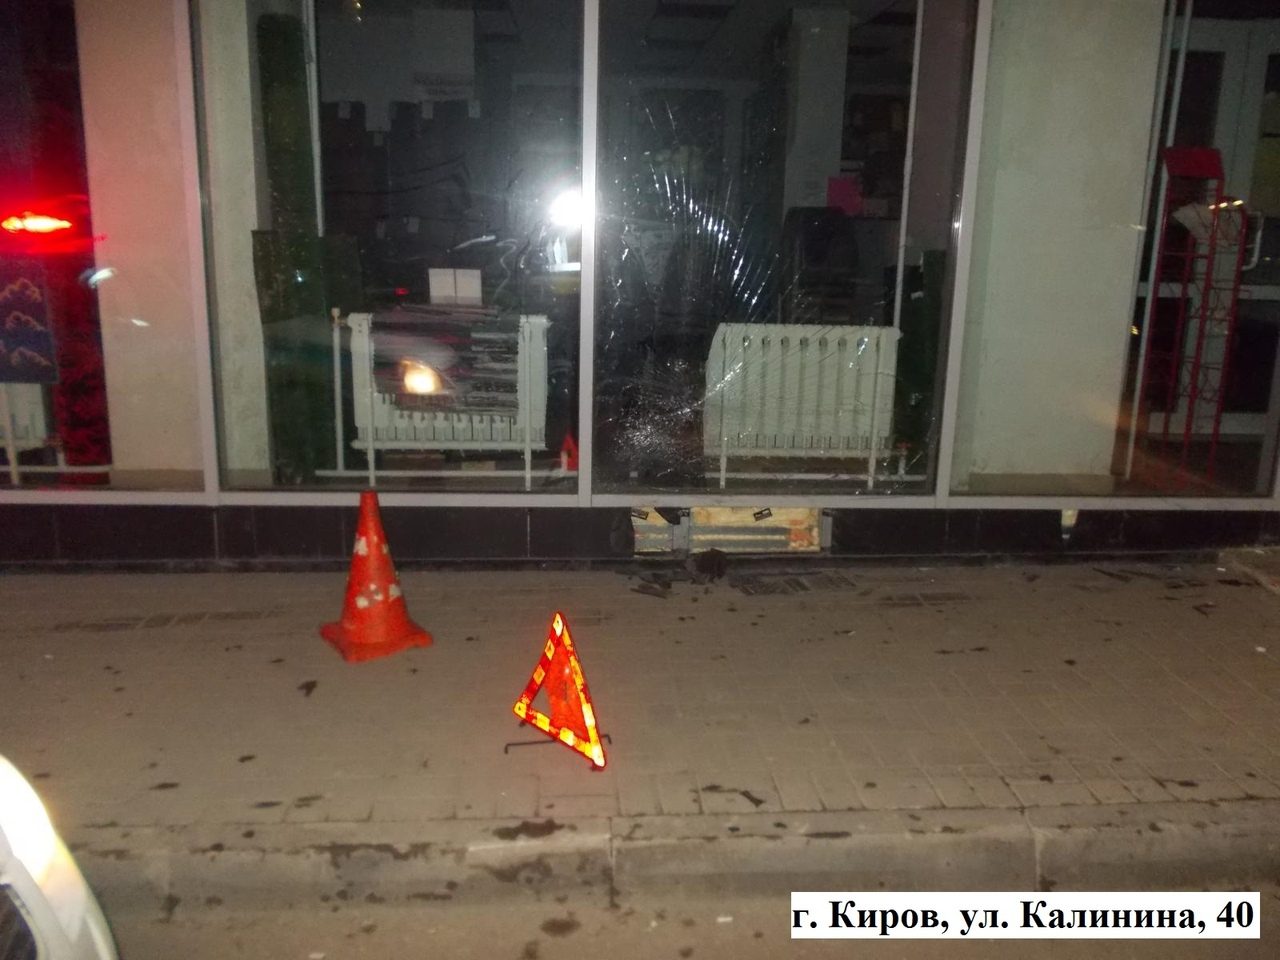 В Кирове разыскивают водителя, который сбил пешехода и влетел в витрину магазина